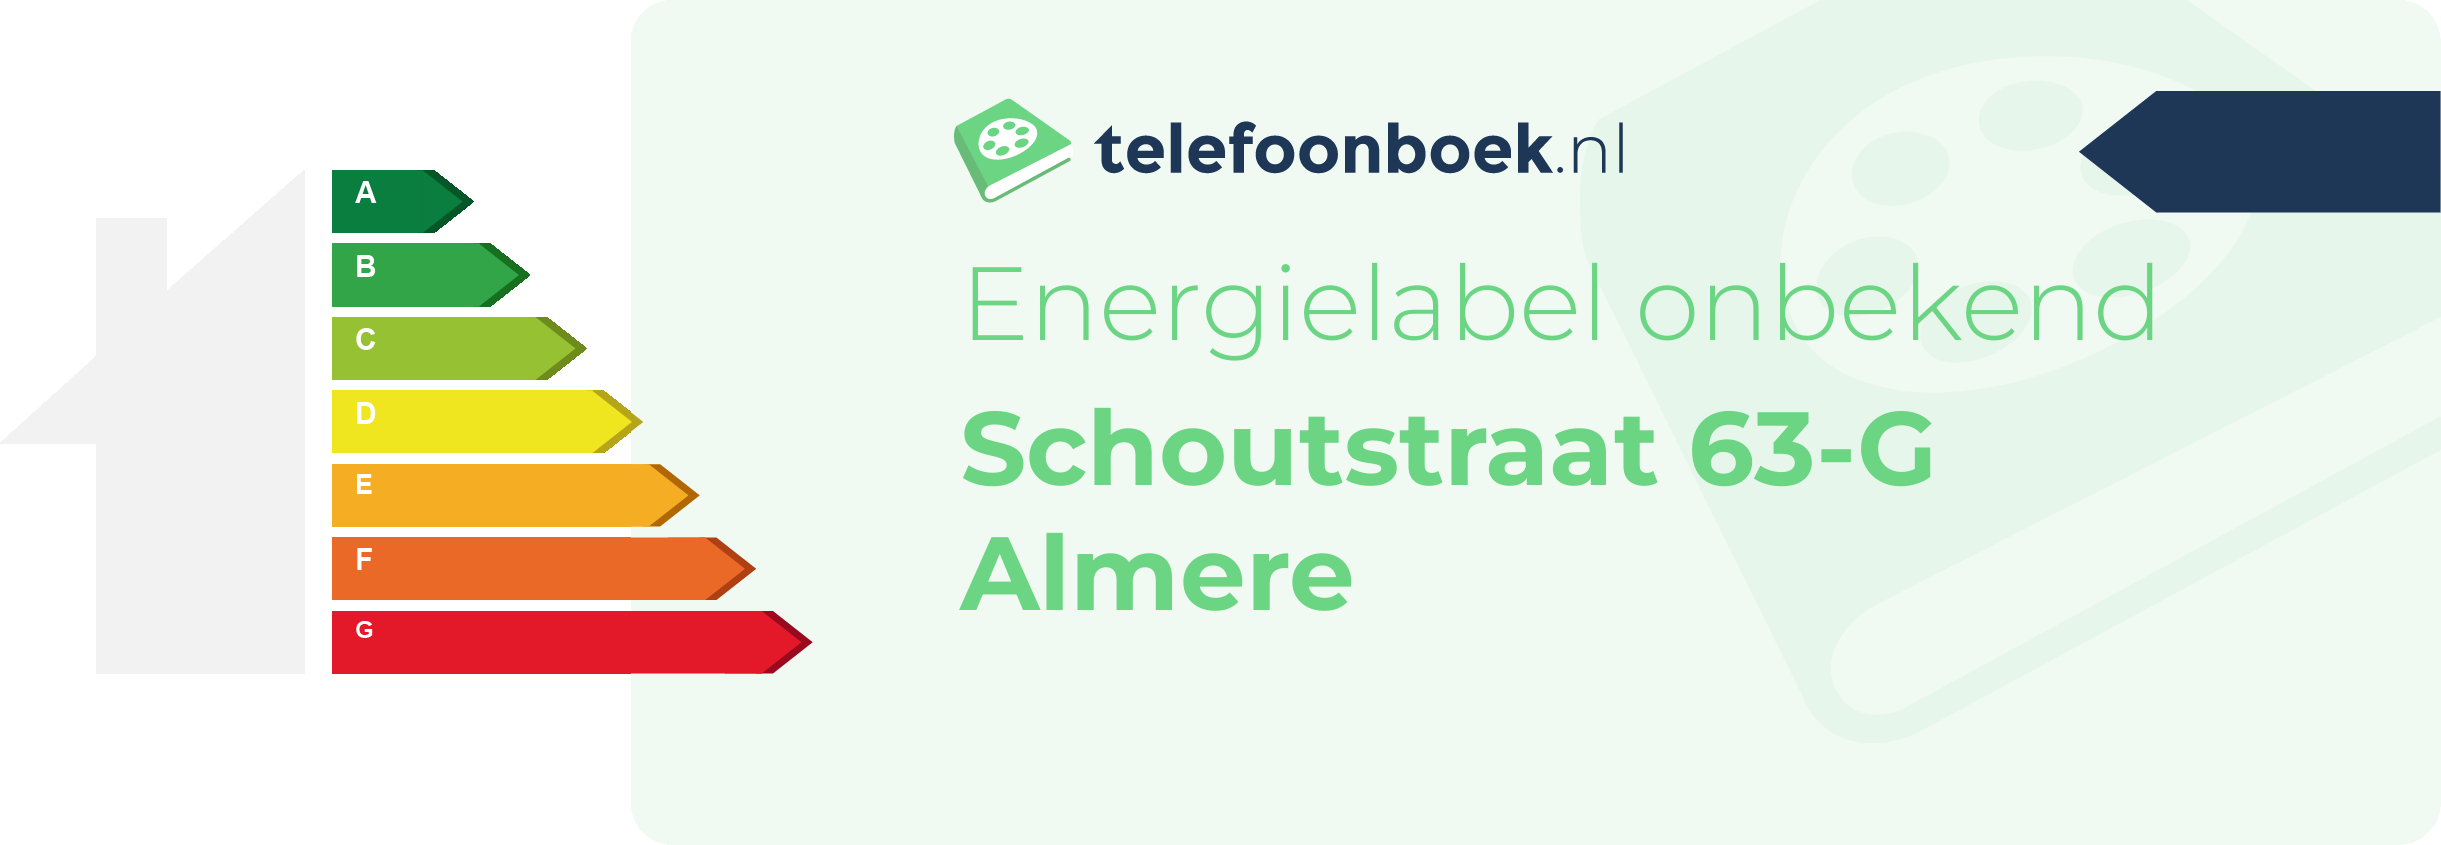 Energielabel Schoutstraat 63-G Almere